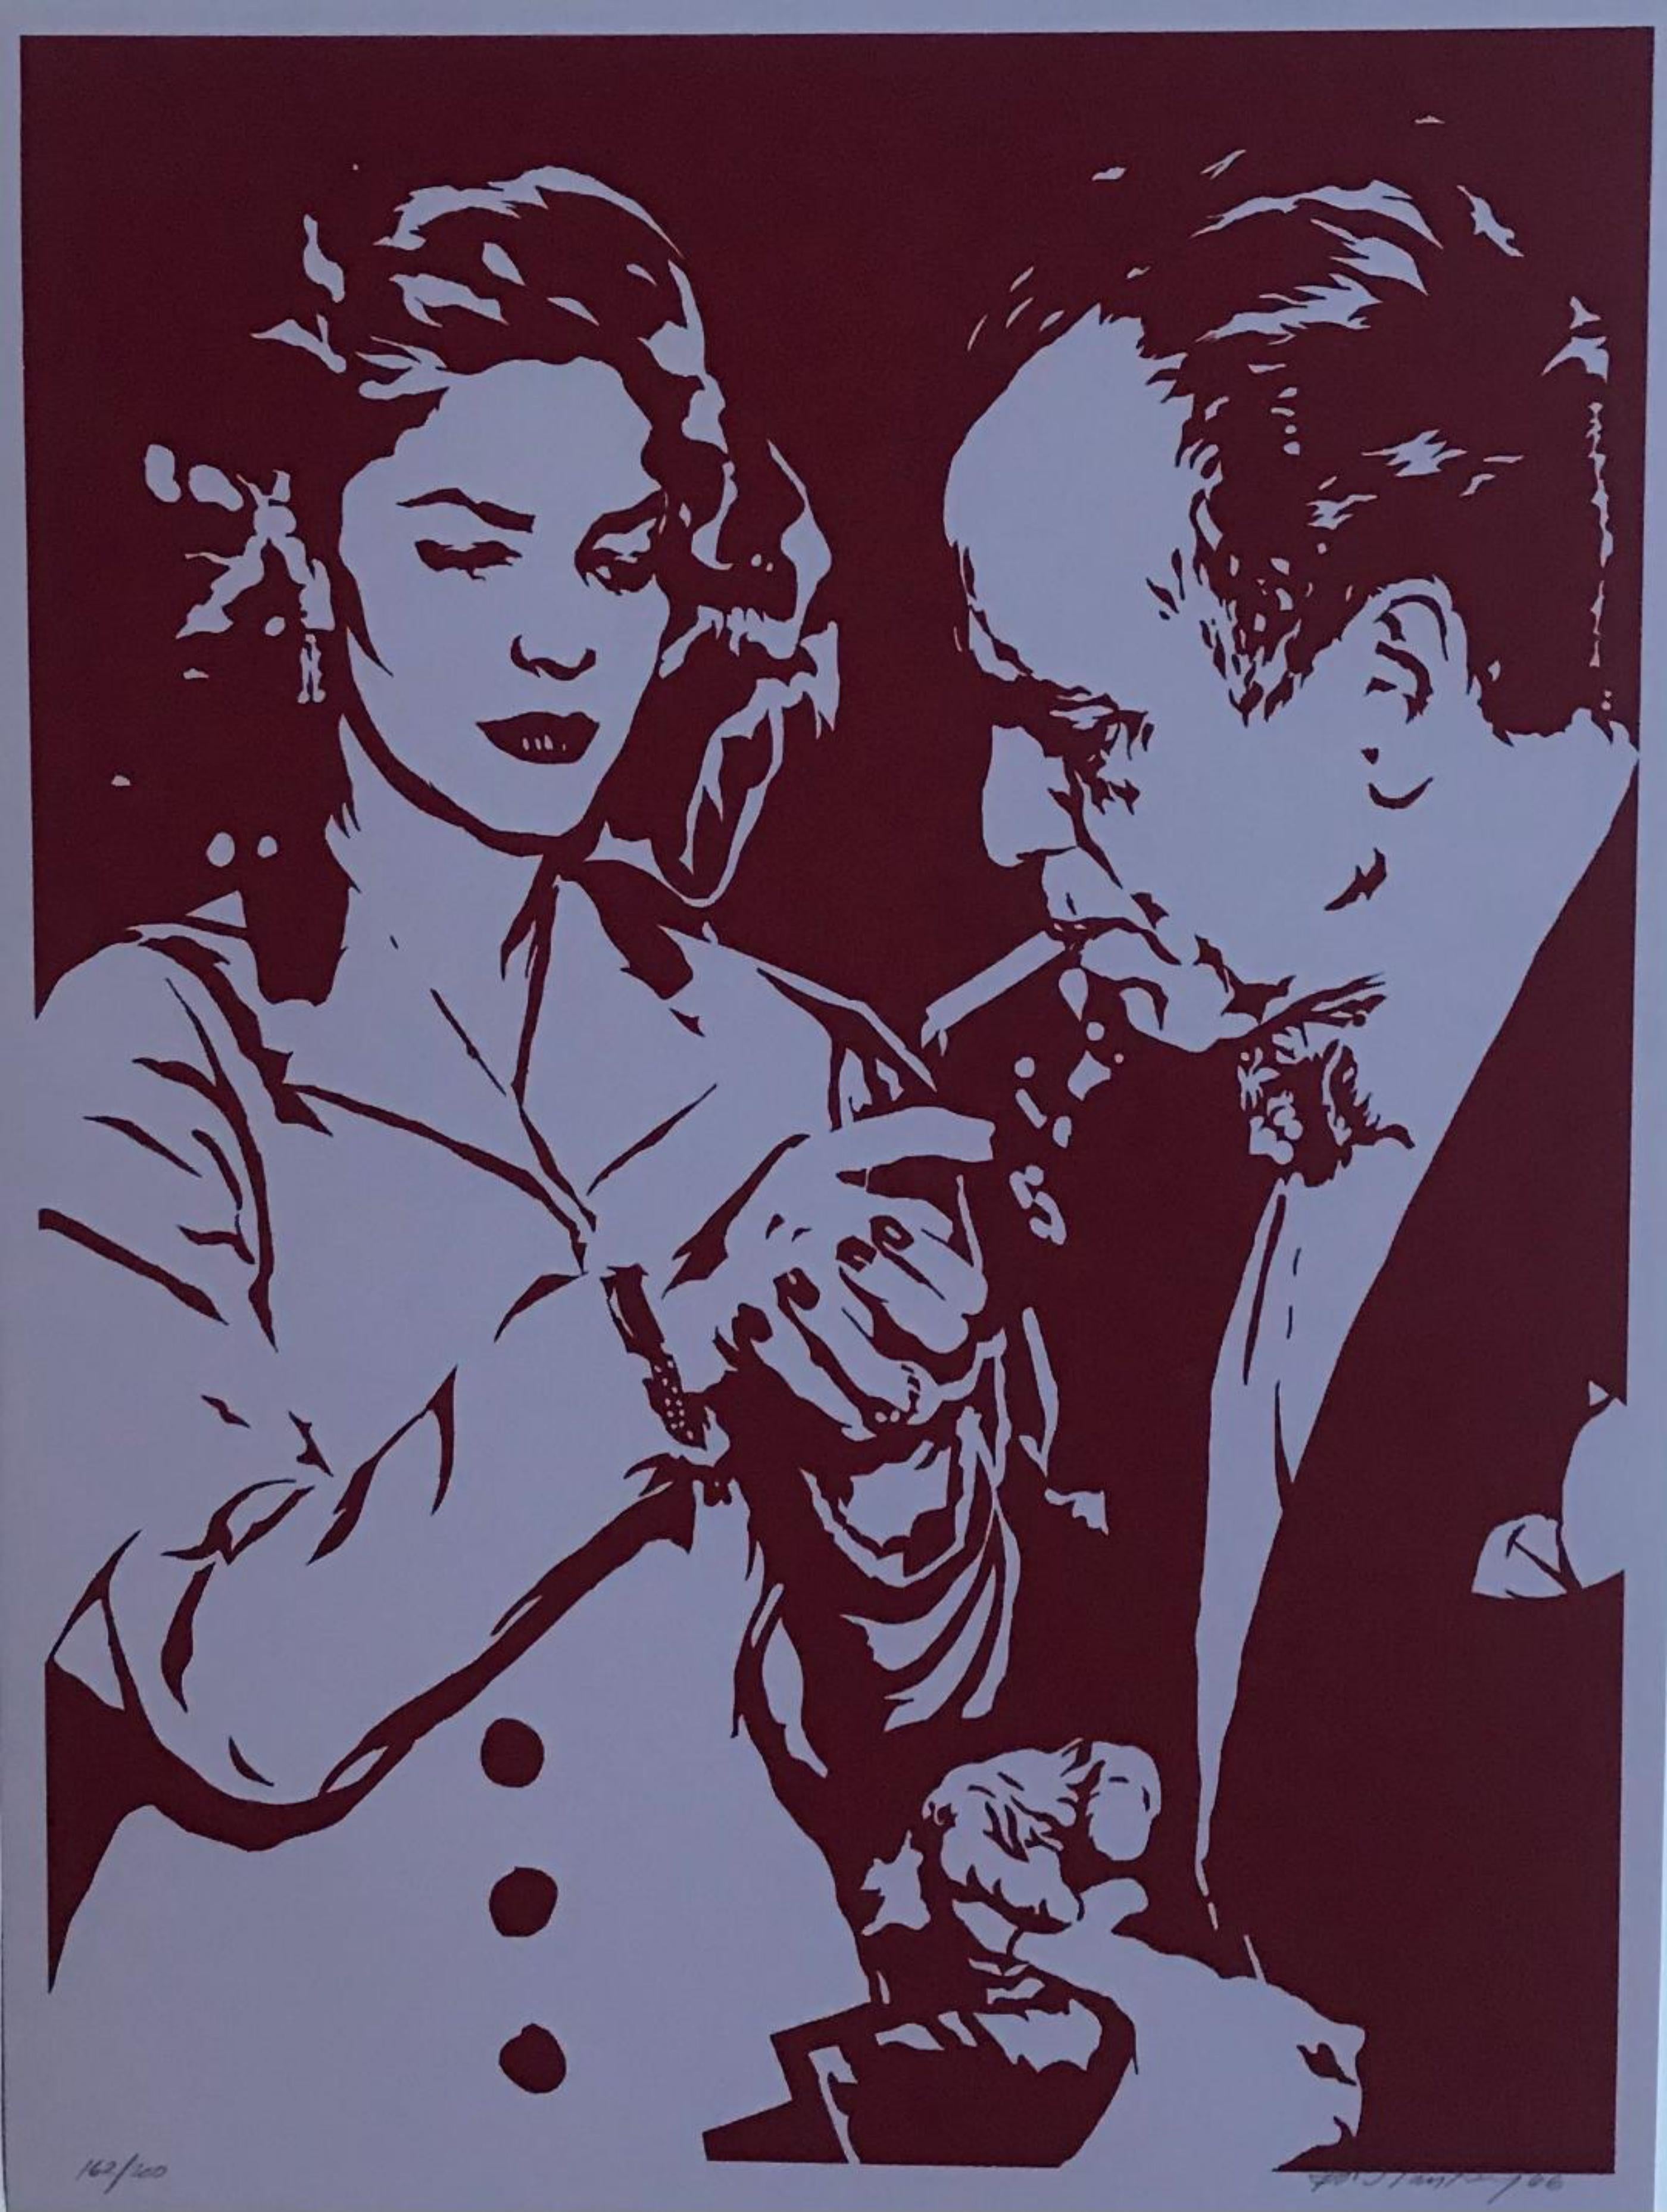 Lauren Bacall lampes pour cigarettes Humphrey Bogart - Print de Bob Stanley